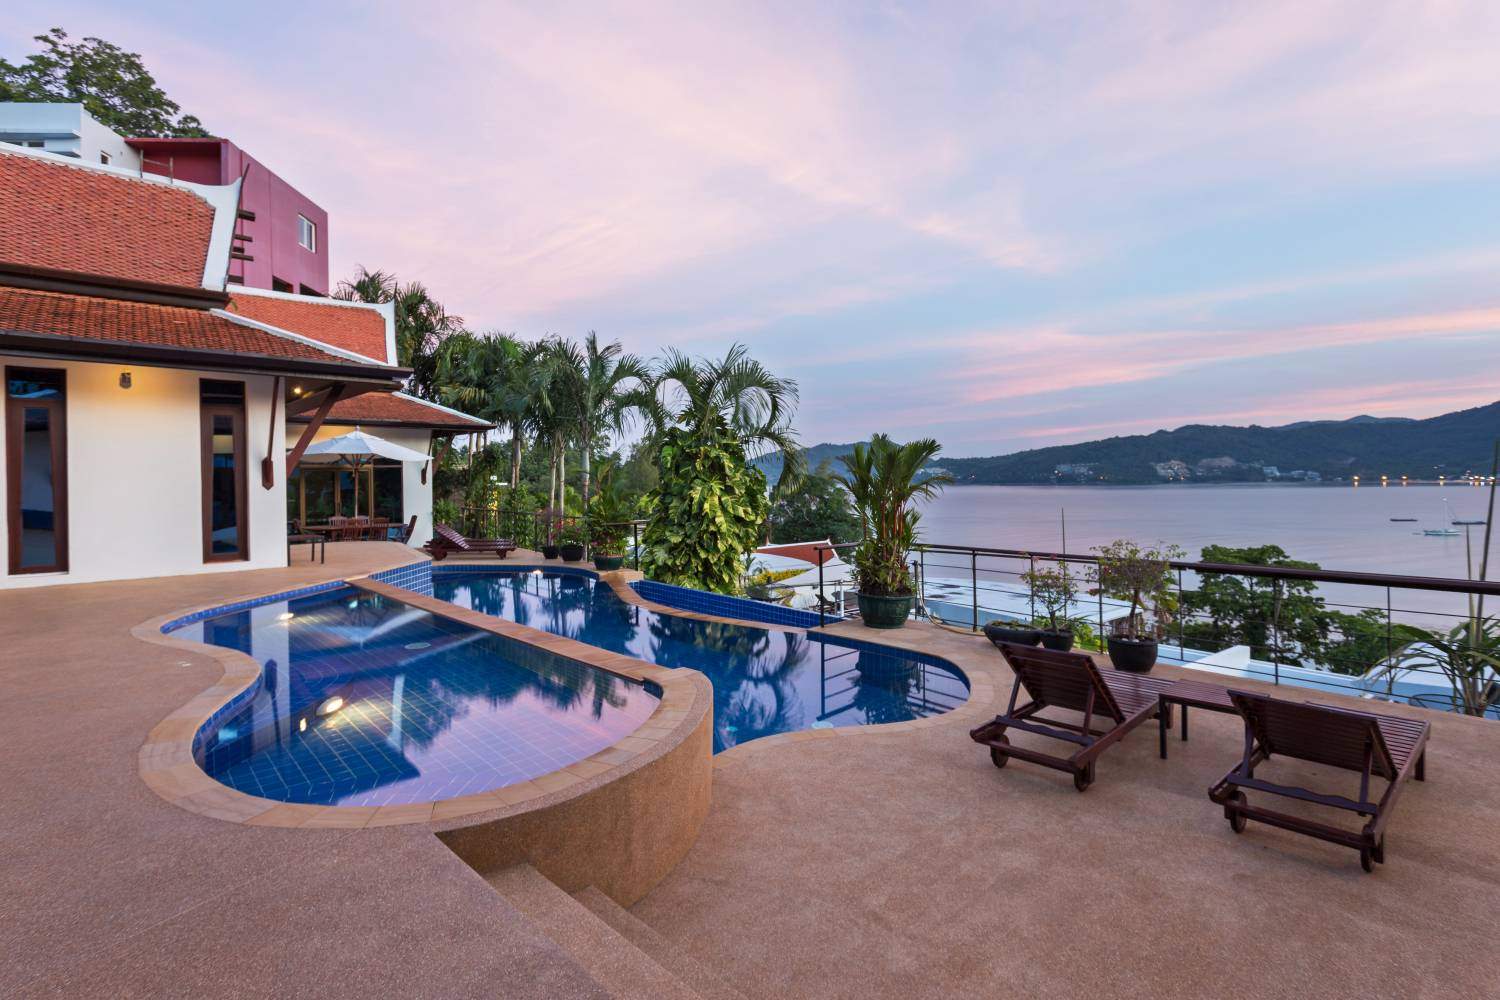 Rent villa Pra Nang, Thailand, Phuket, Patong | Villacarte